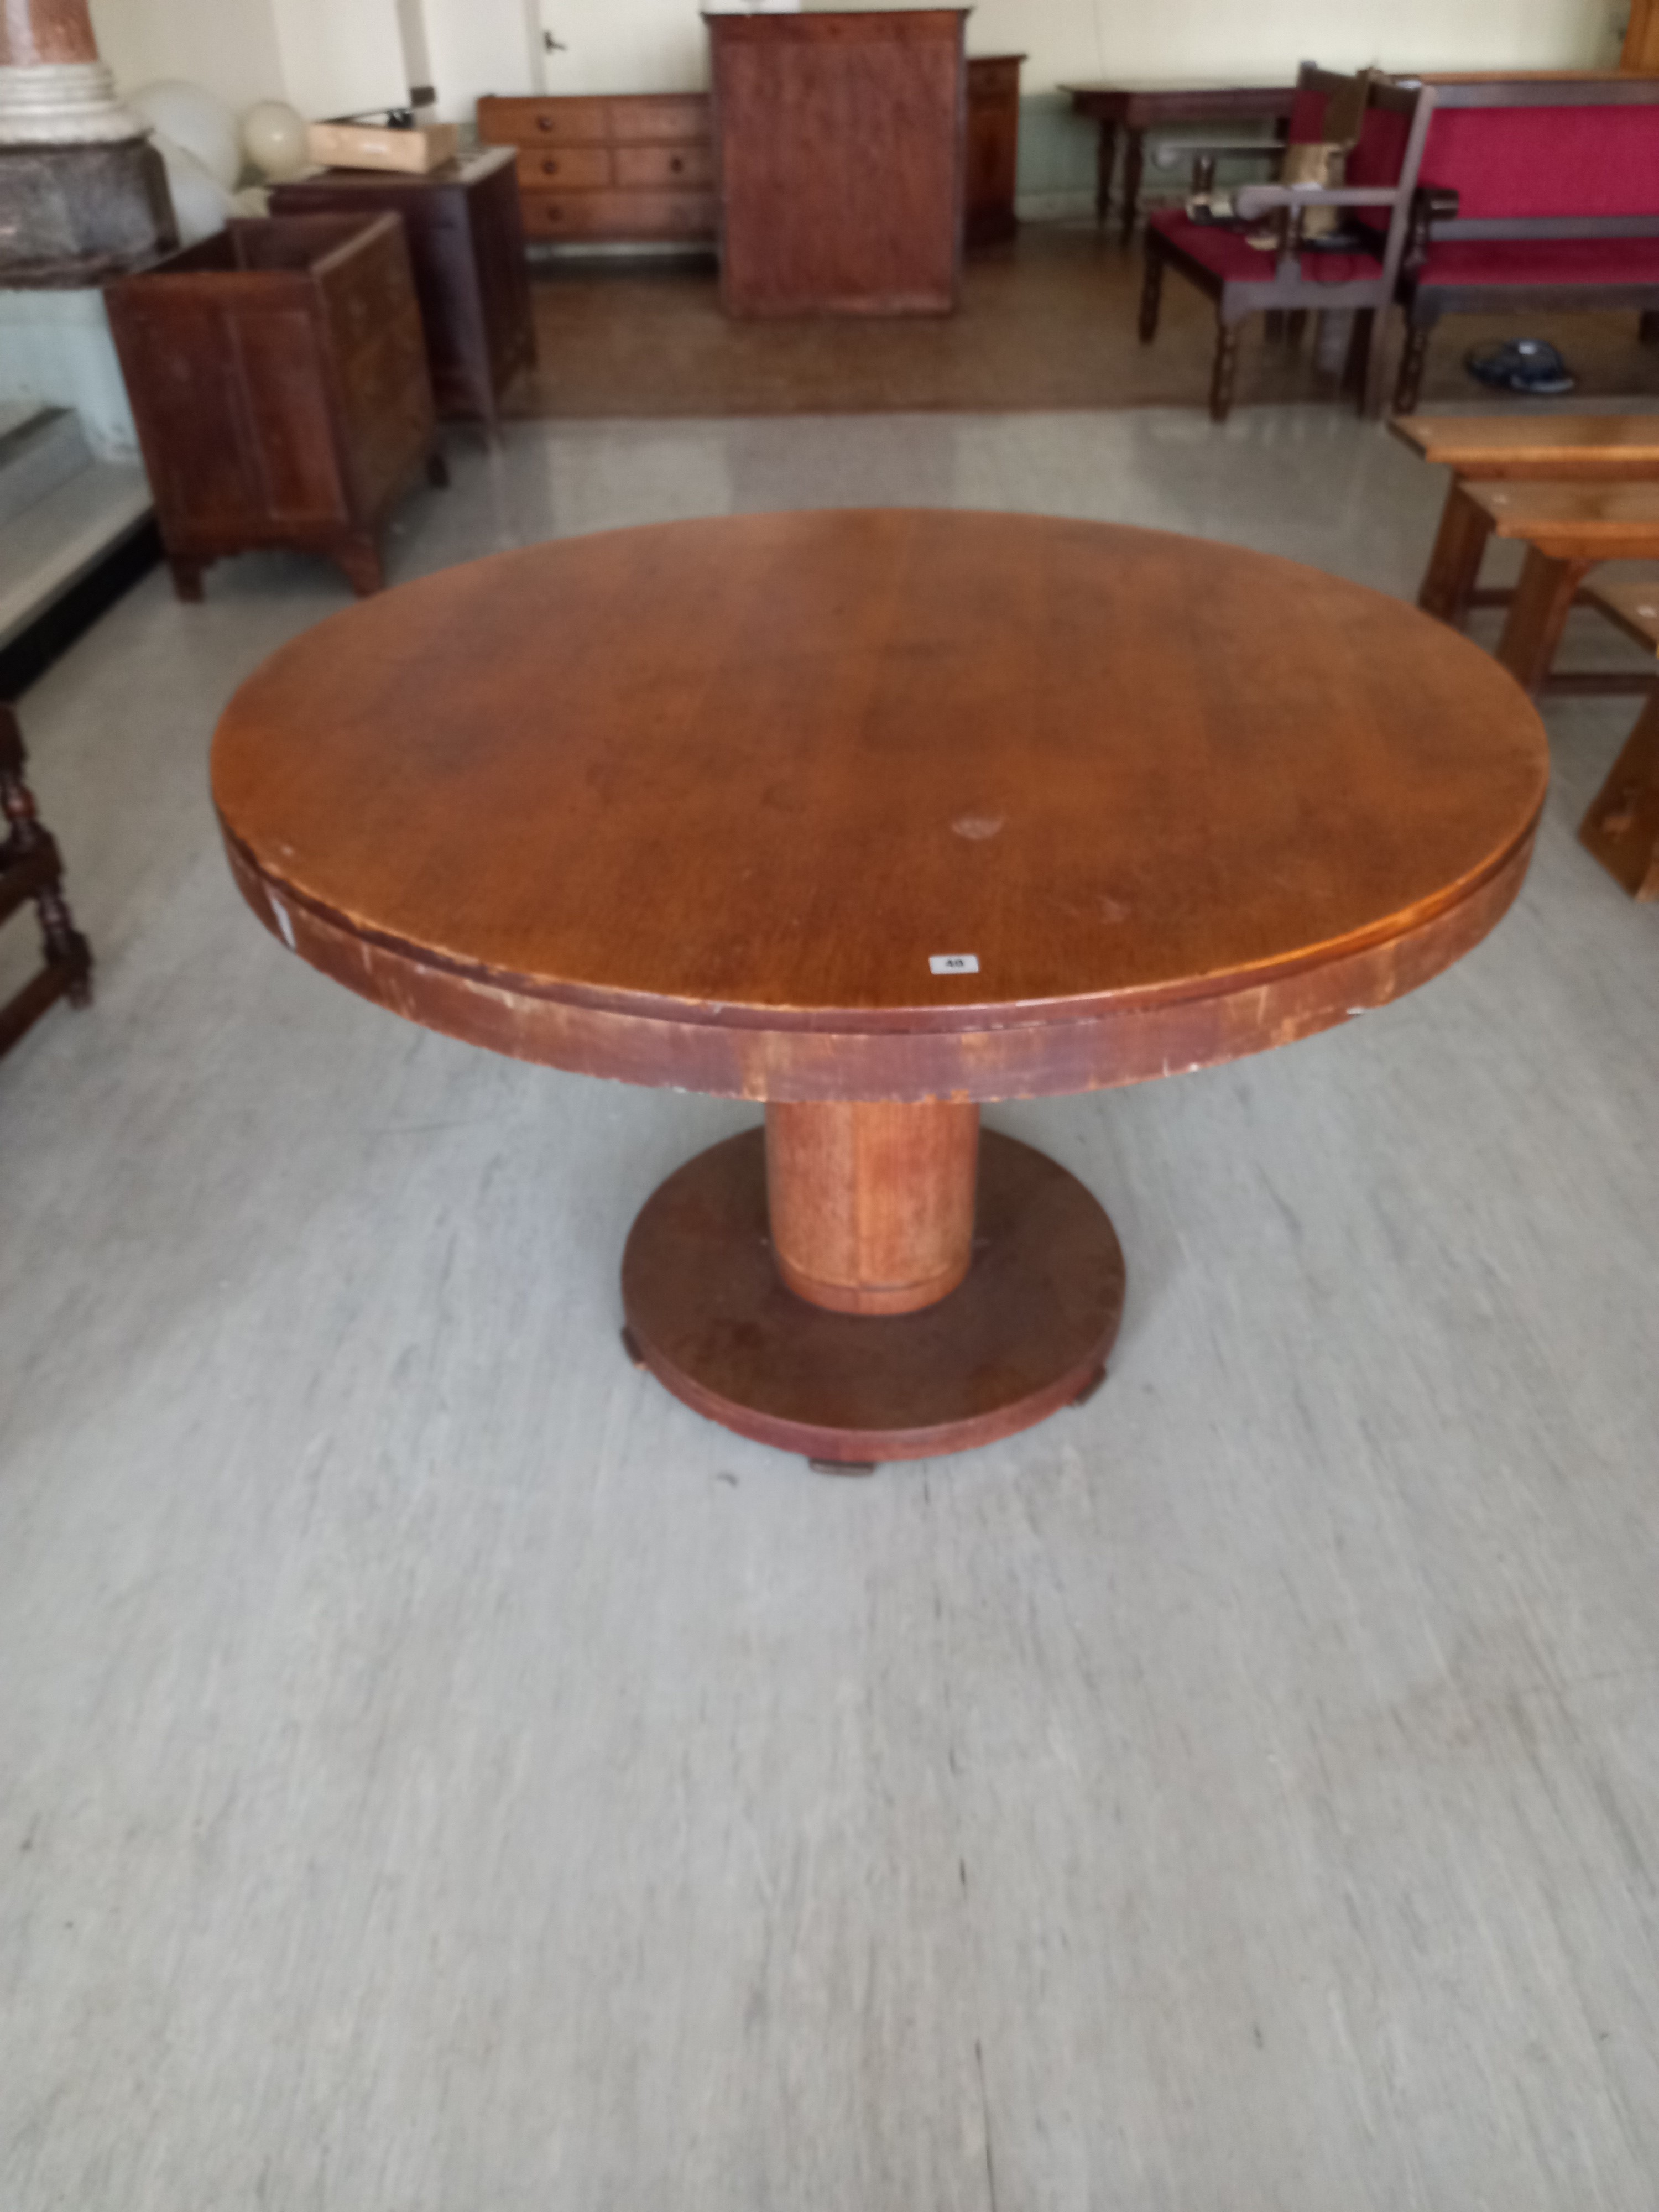 An Art Deco circular dining Table 48" dia x 31" high